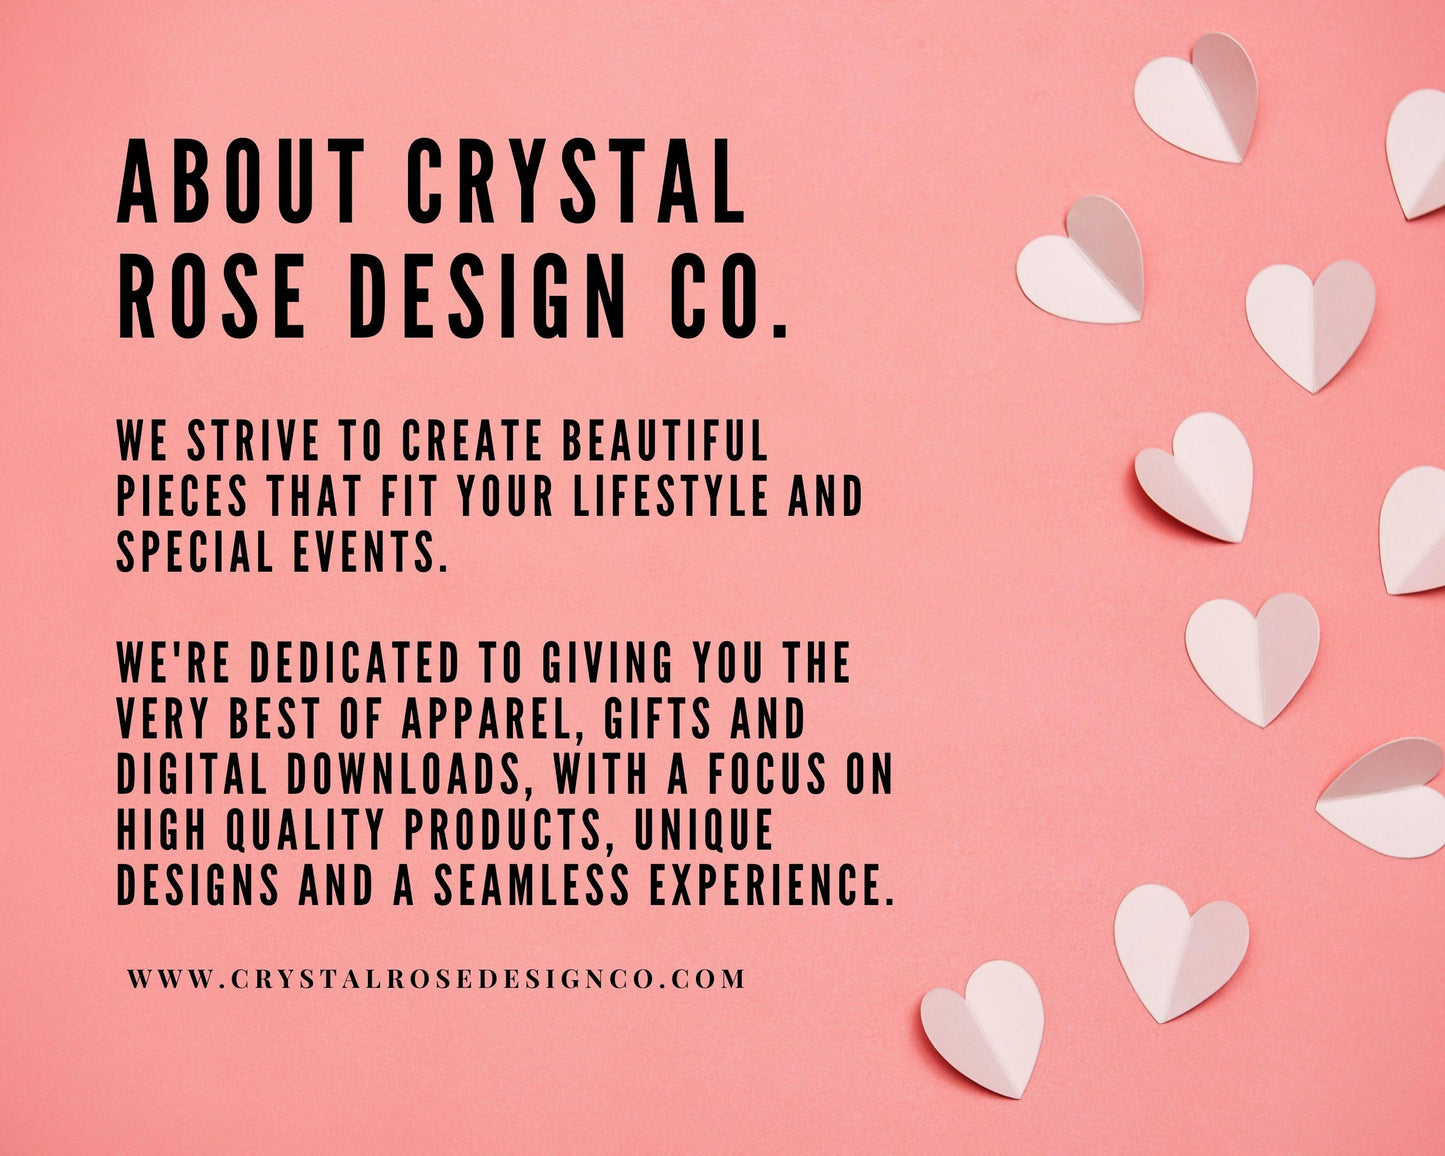 Gratitude Mindset Short Sleeve Tee - Crystal Rose Design Co.